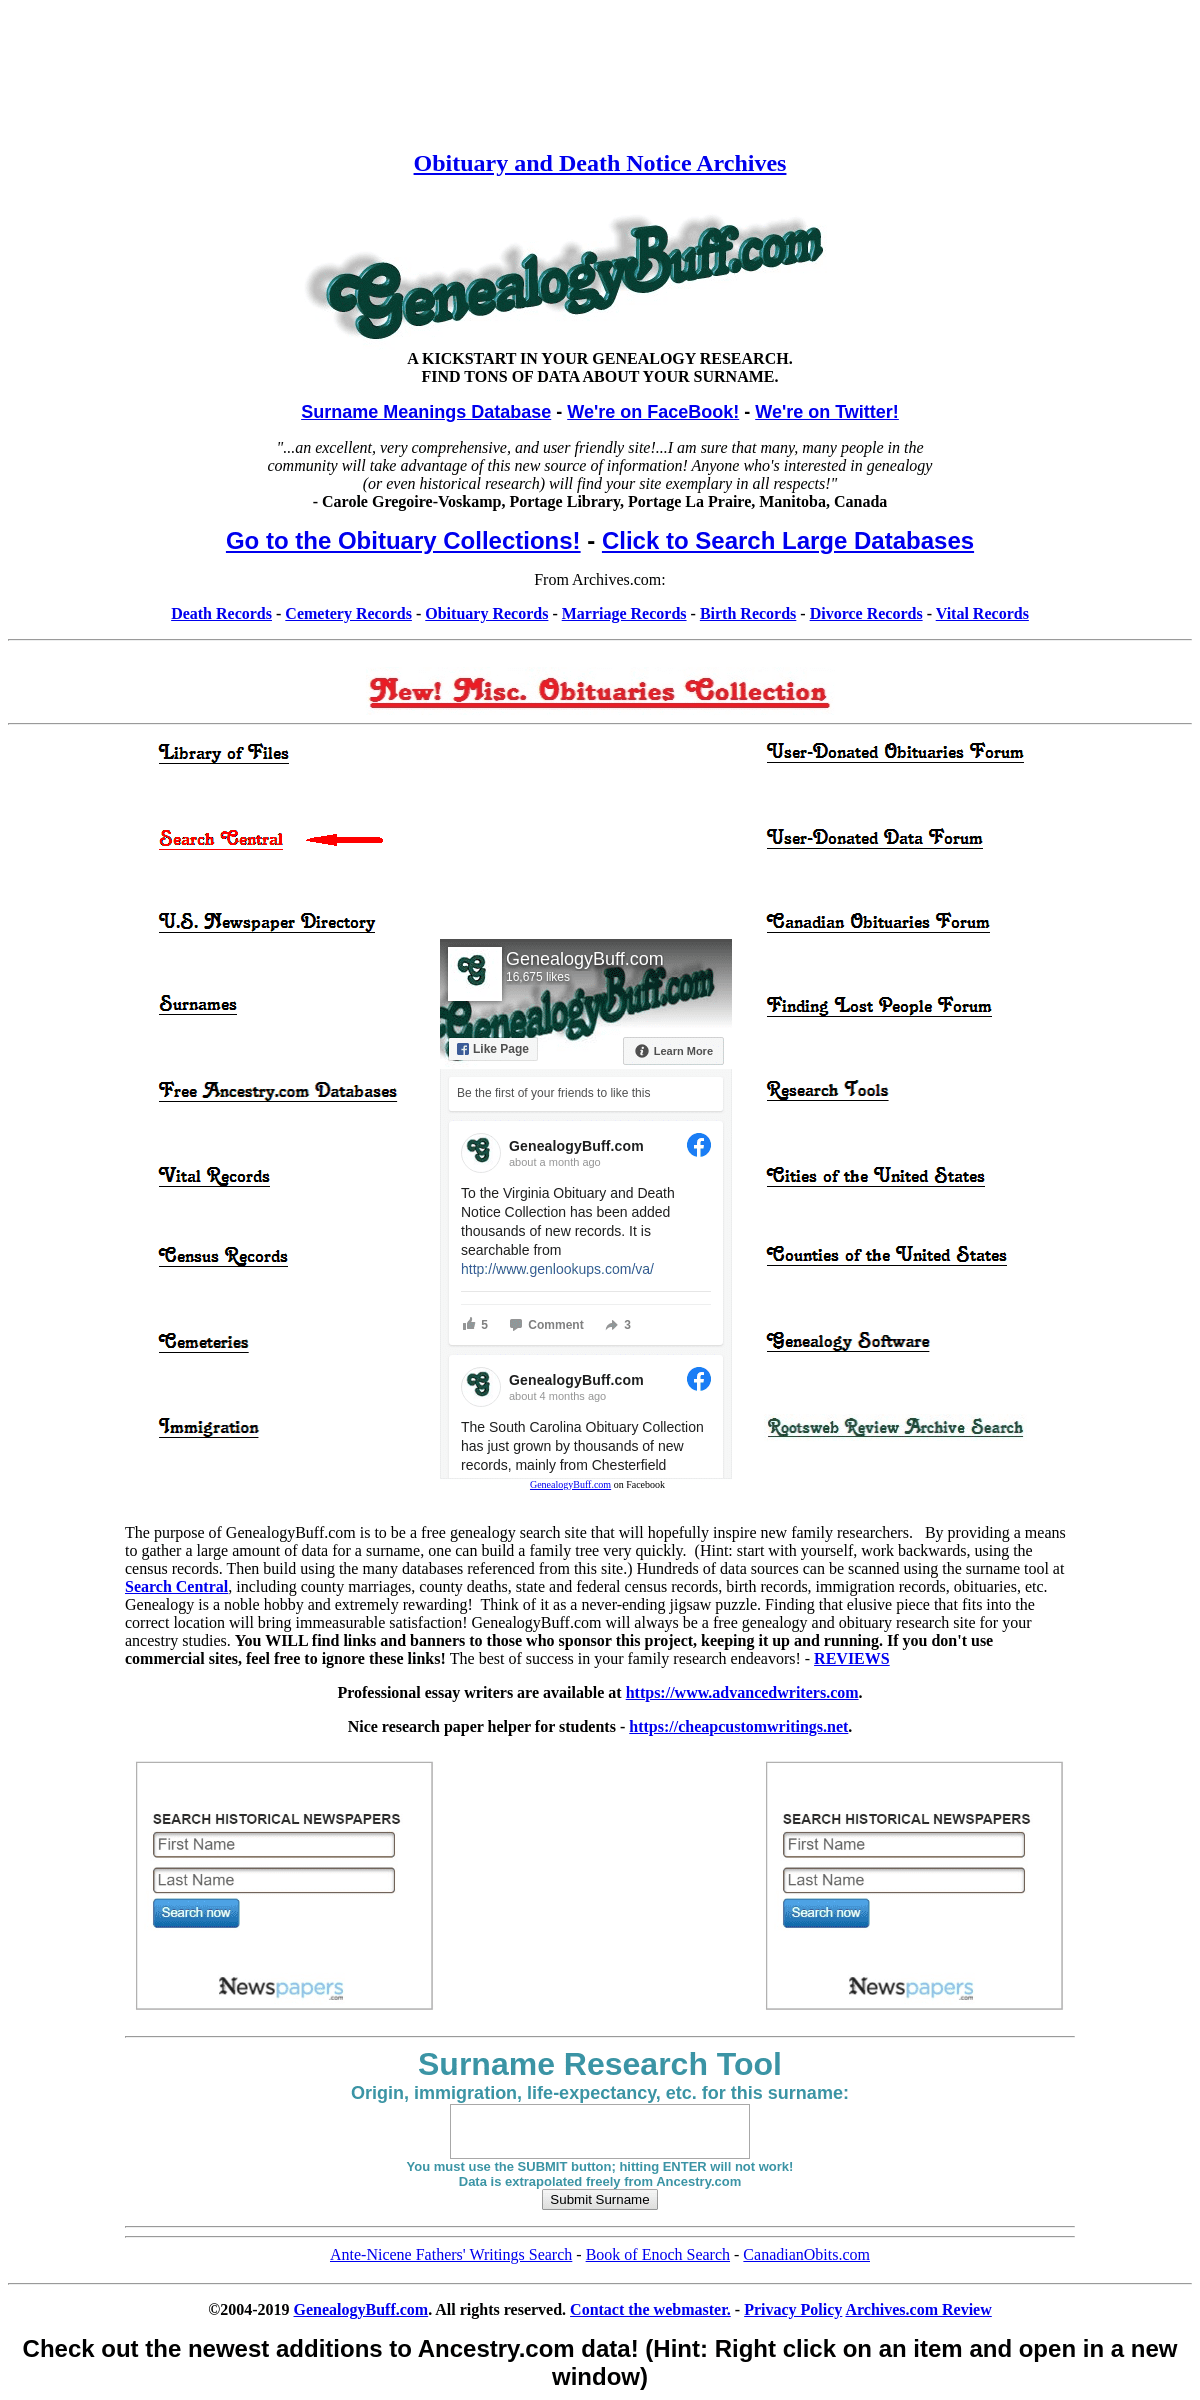 A complete backup of genealogybuff.com